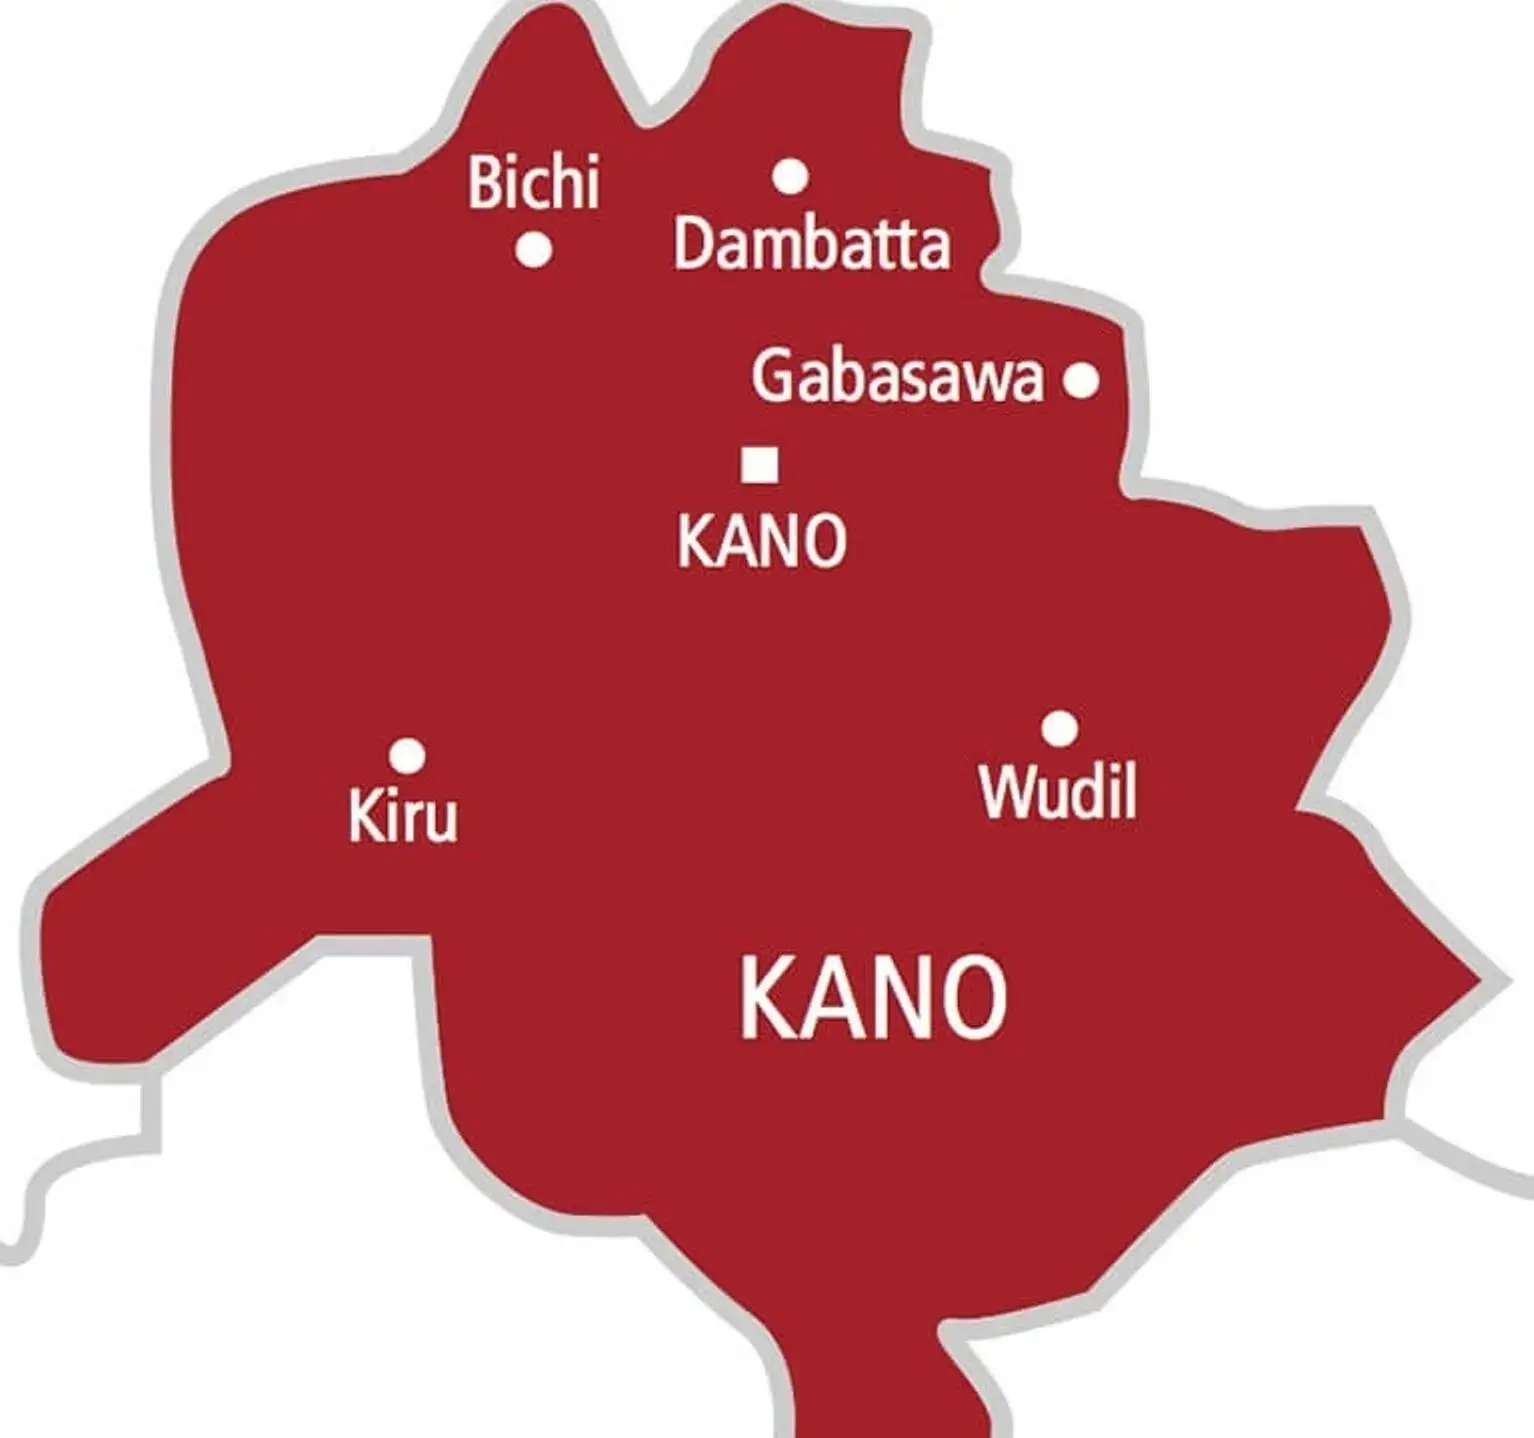 Policemen Injured In Kano During Attack 